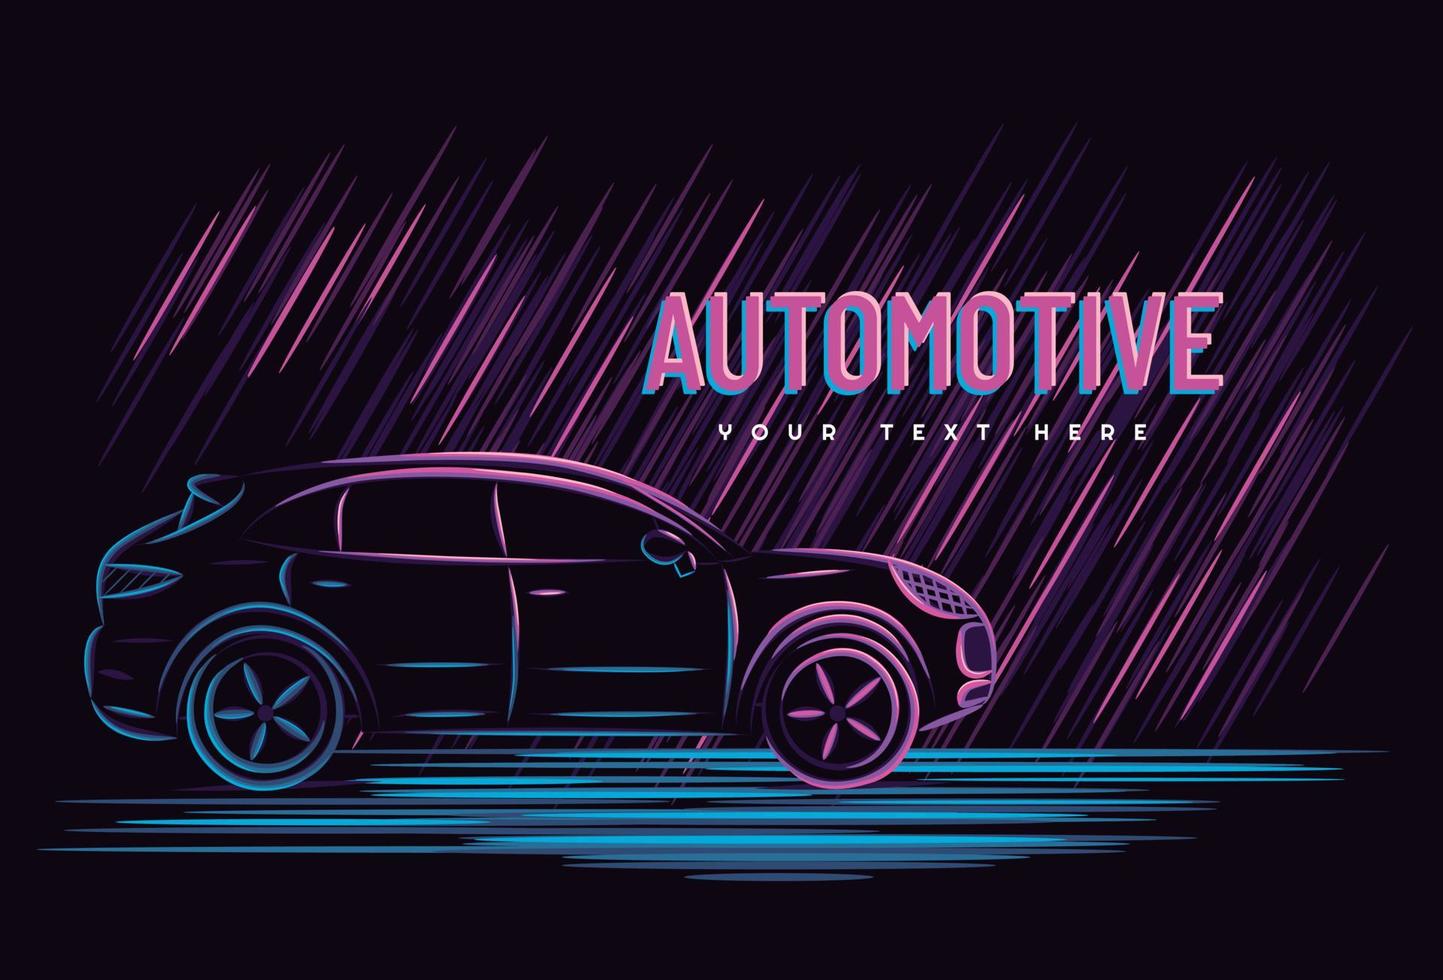 illustration vektorgrafik av bil bilkoncept med linjekonst neonskylt stil, bra för t-shirt, banderoll, affisch, målsida, flygblad. vektor